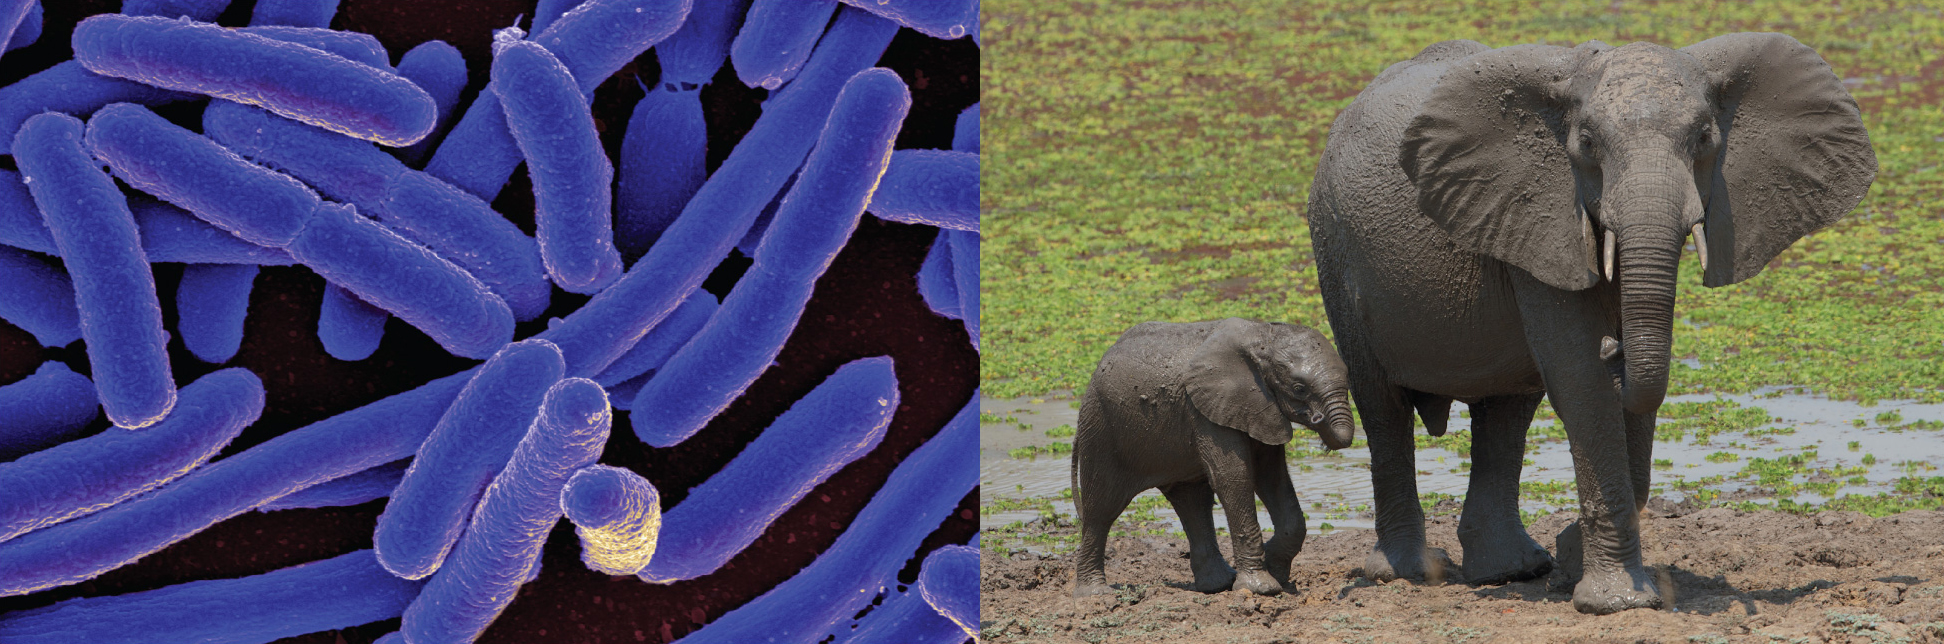 Micrografía de celda en forma de varilla. Foto de elefantes.